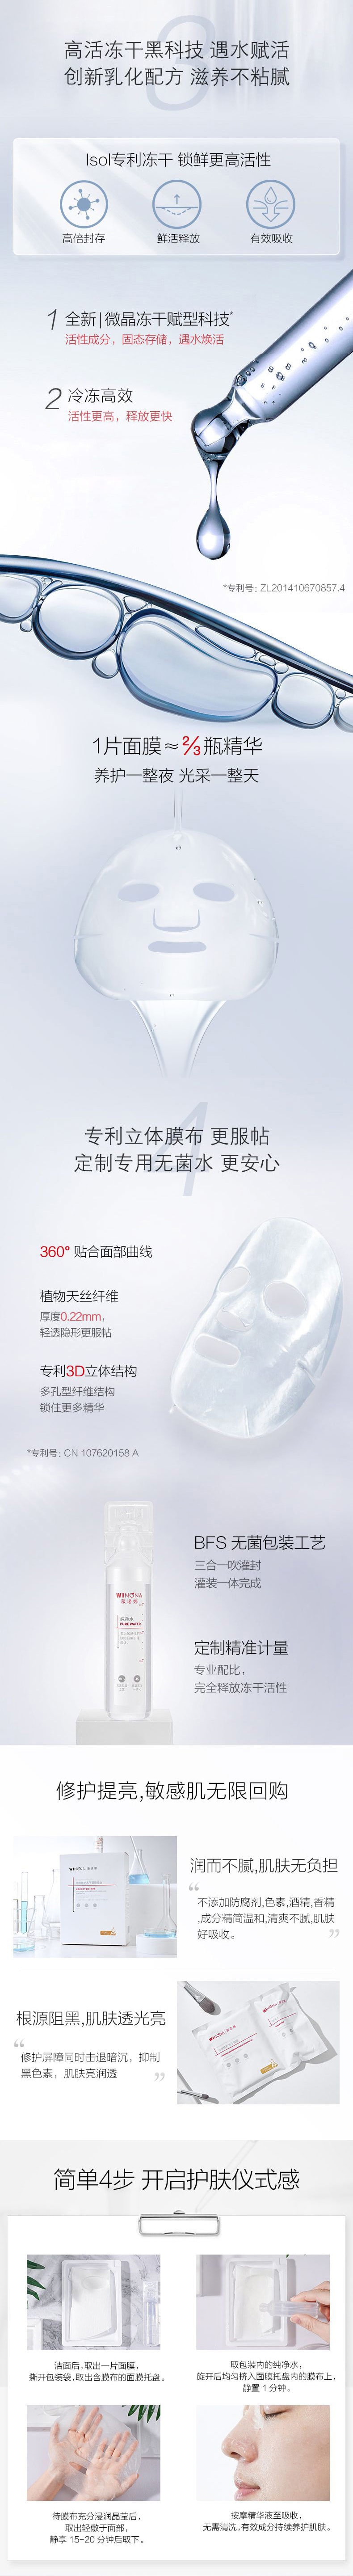 中国薇诺娜(WINONA)光感修护冻干面膜6片/盒 1盒 保湿 面膜 亮白肌肤 提亮修护敏感肌【直降叠券叠满赠】拉新价